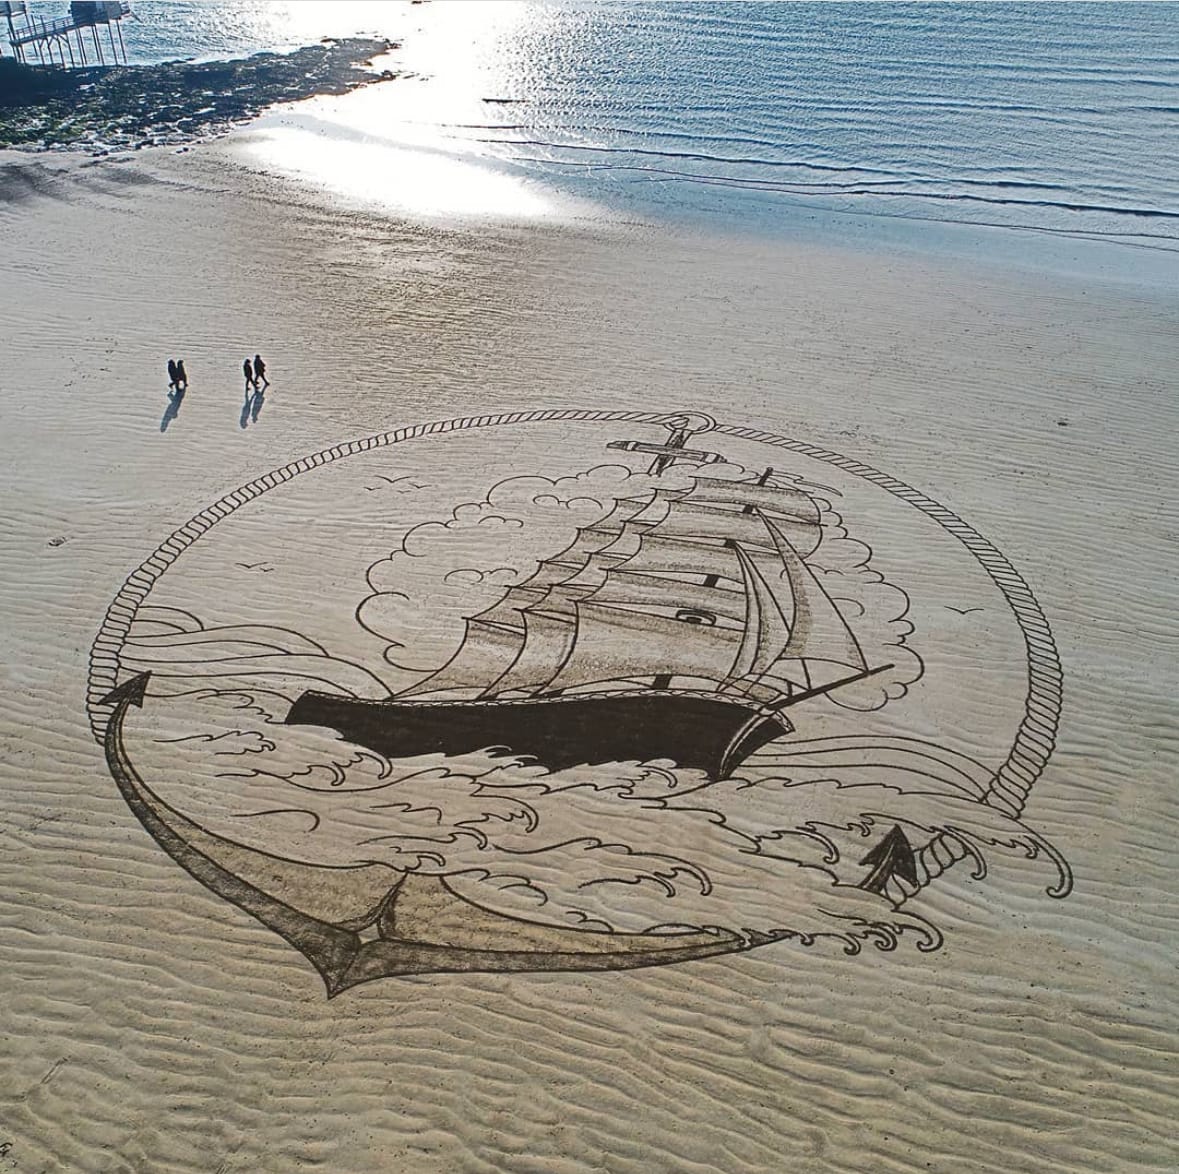 ผลงานภาพวาดบนหาดทราย